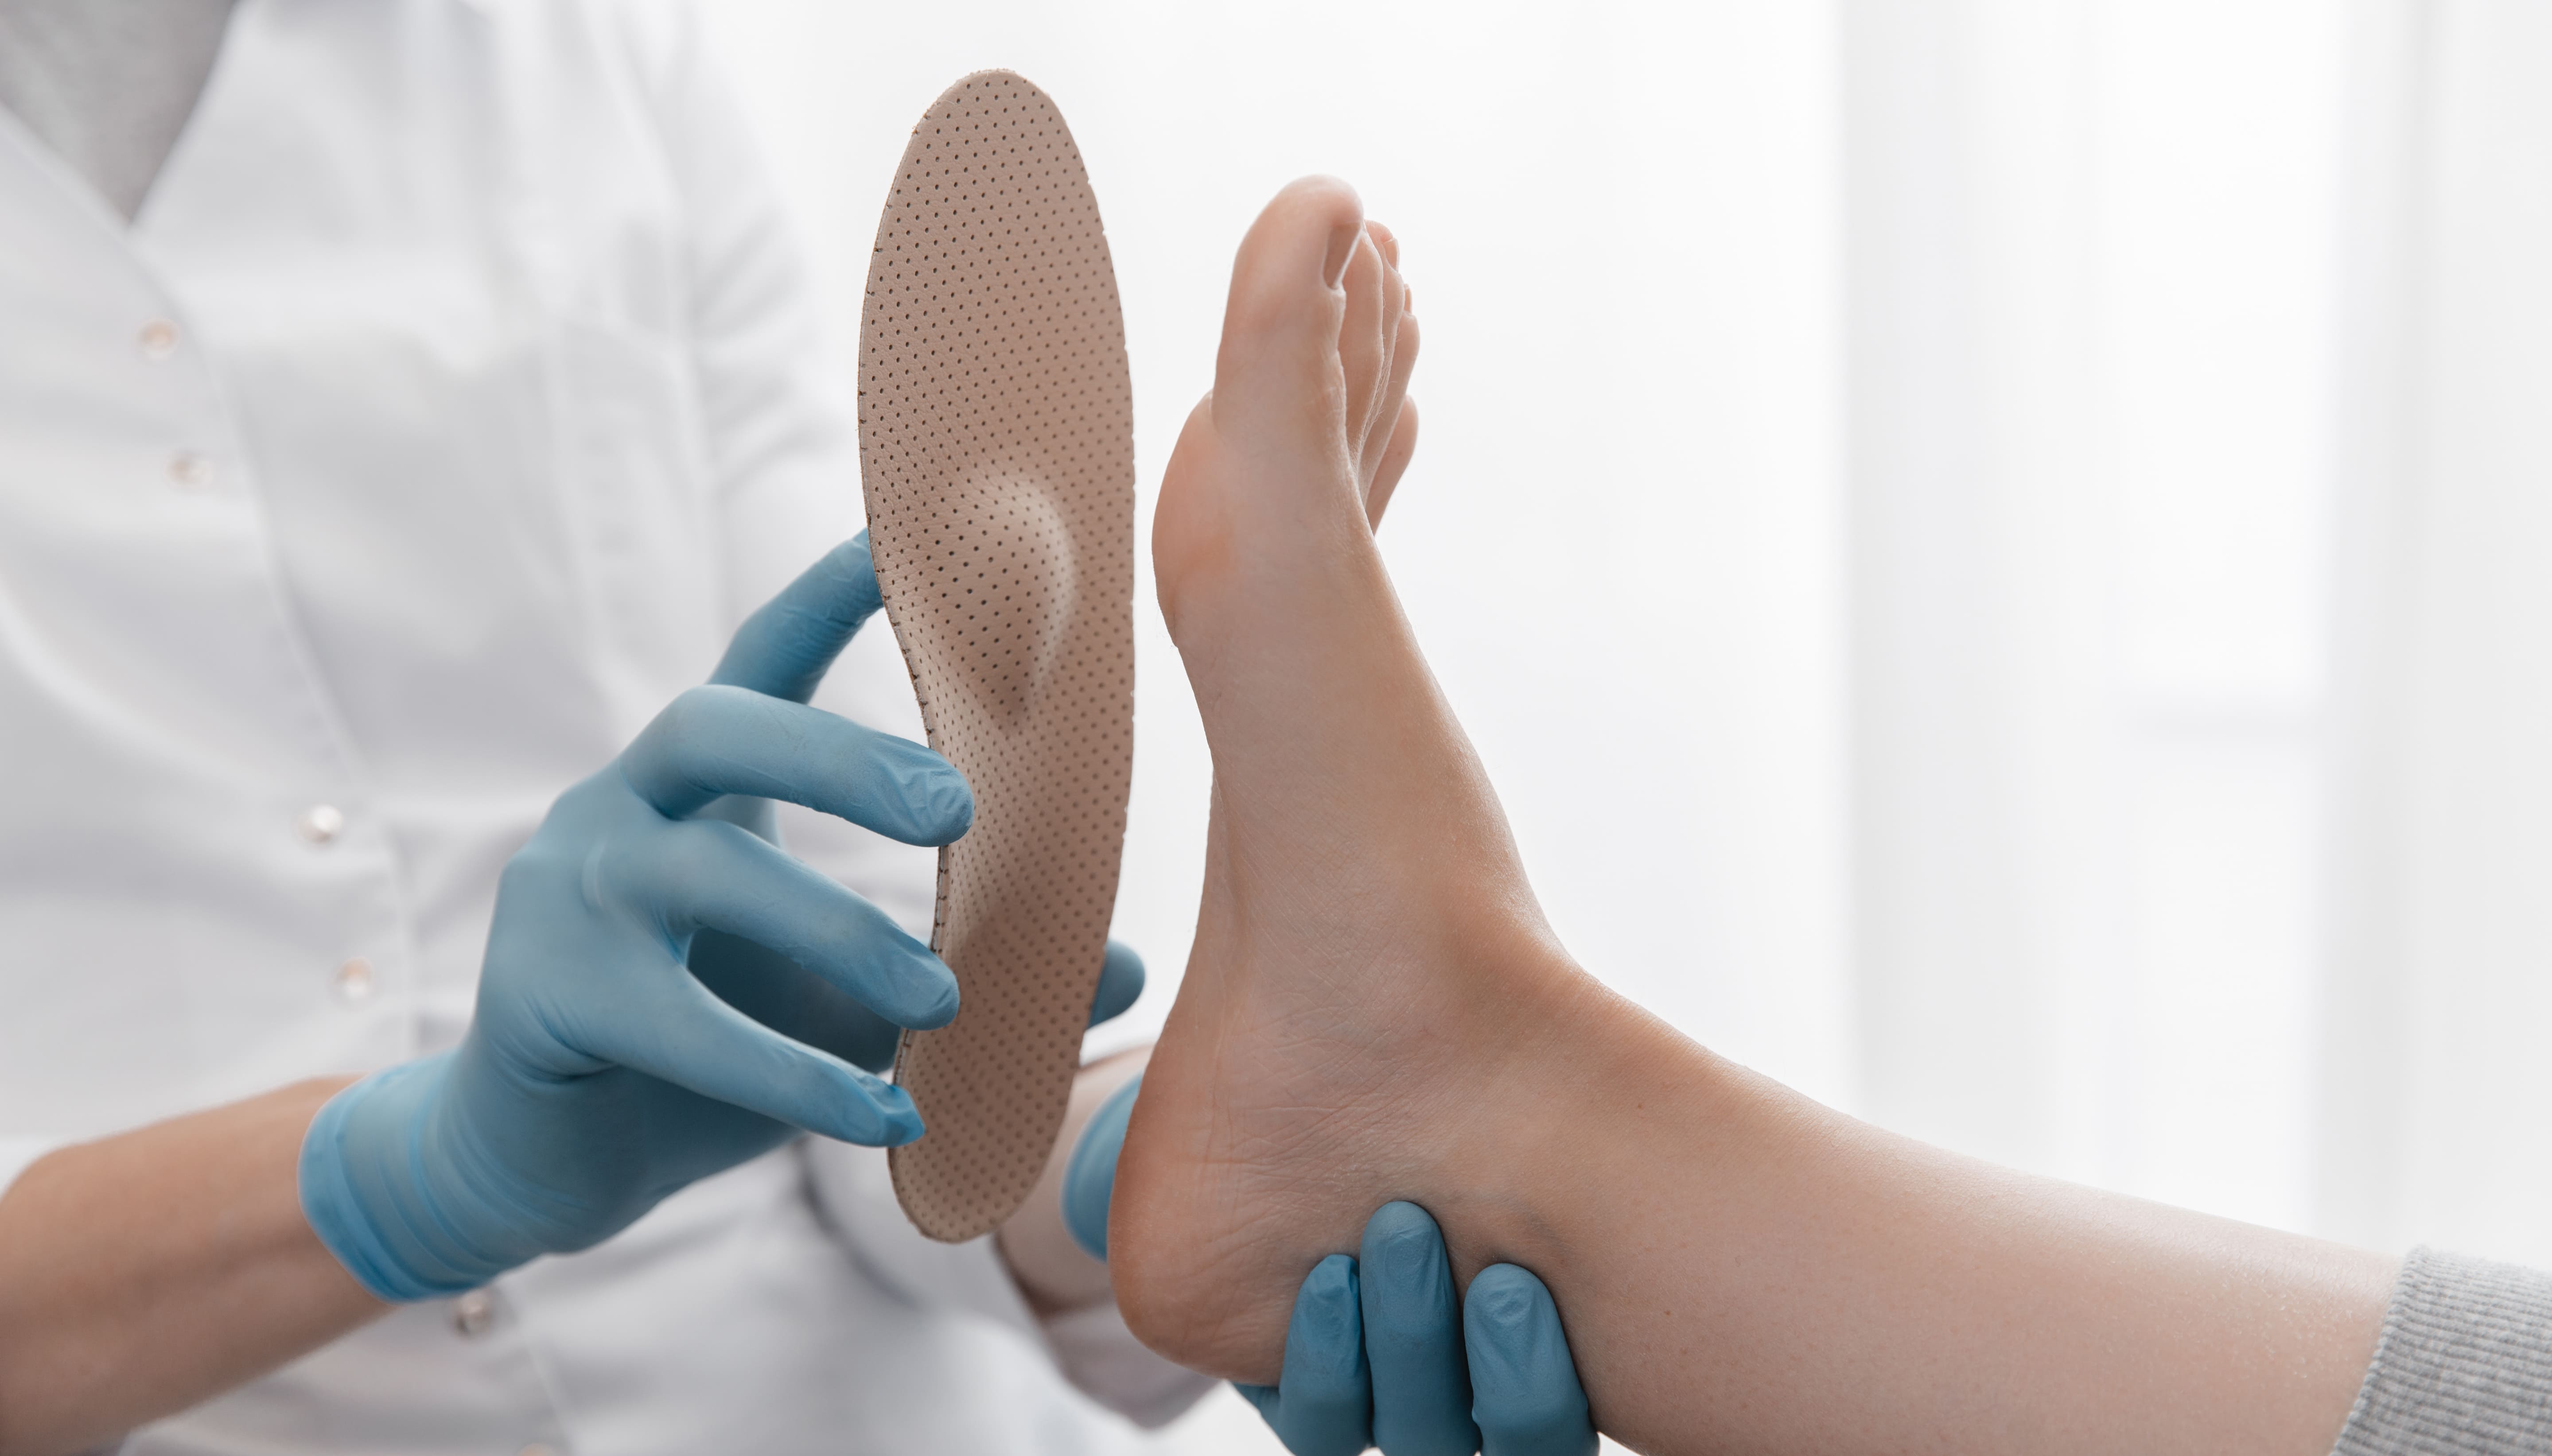 Medizinisches Personal hält eine orthopädische Schuheinlage an die Fußsohle einer Patientin.